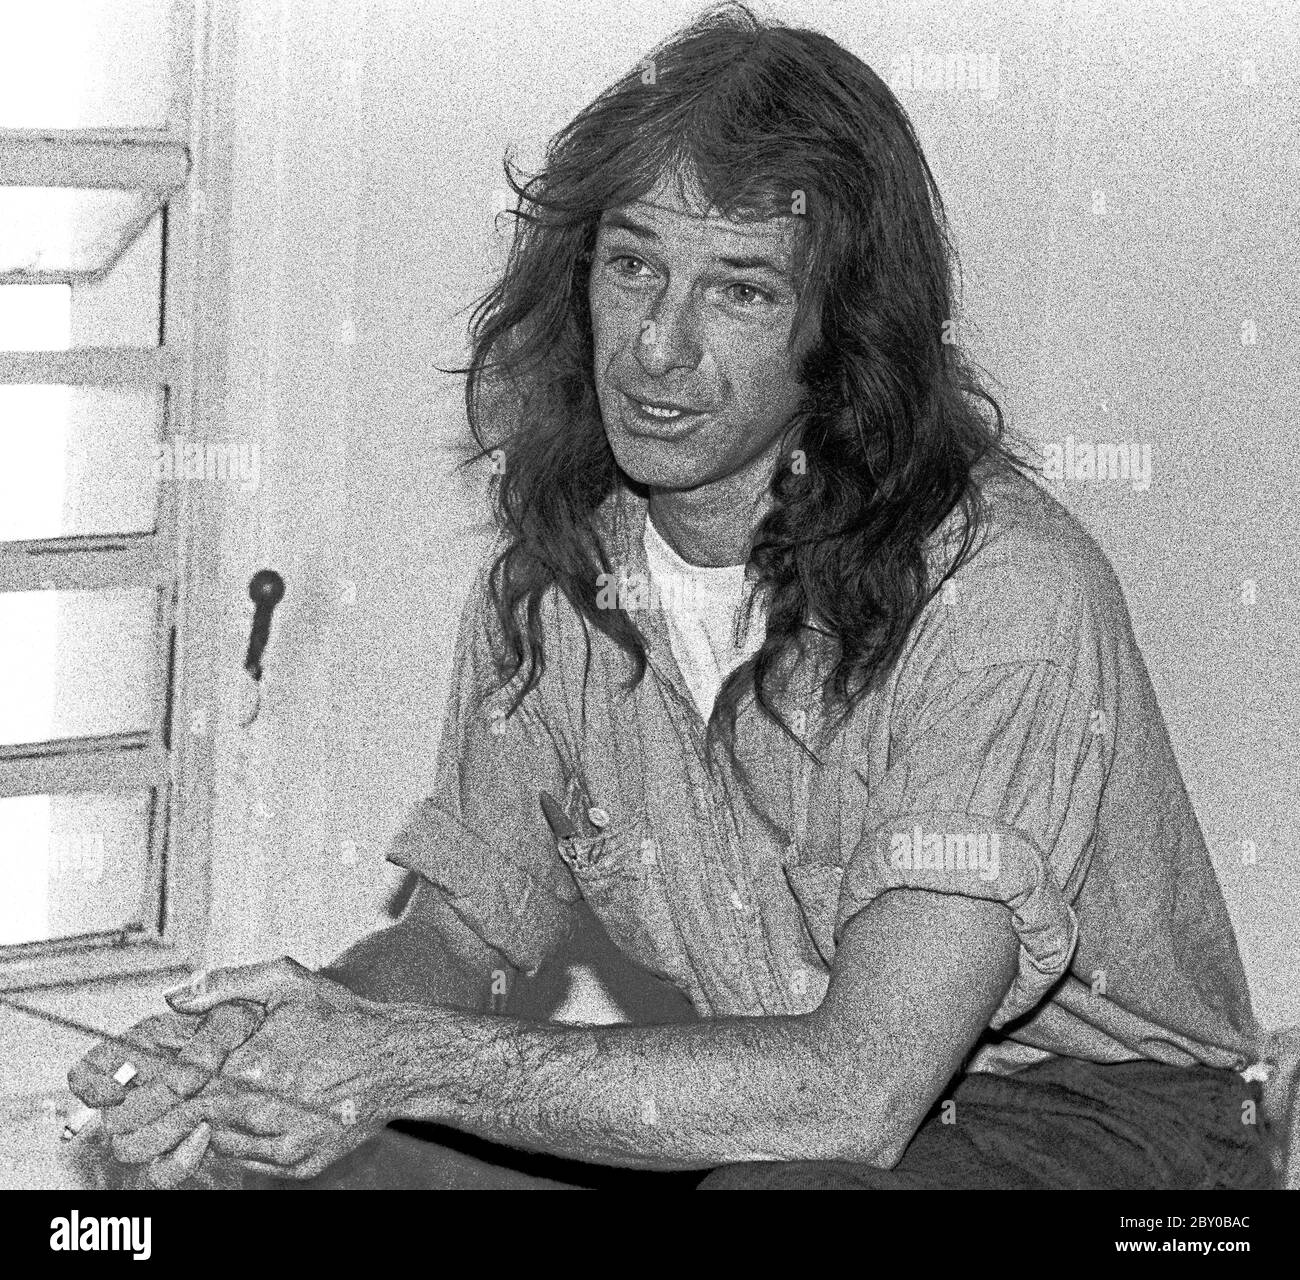 Dennis Robert Peron, un activista de San Francisco, en la cárcel a finales de los años 70 Foto de stock